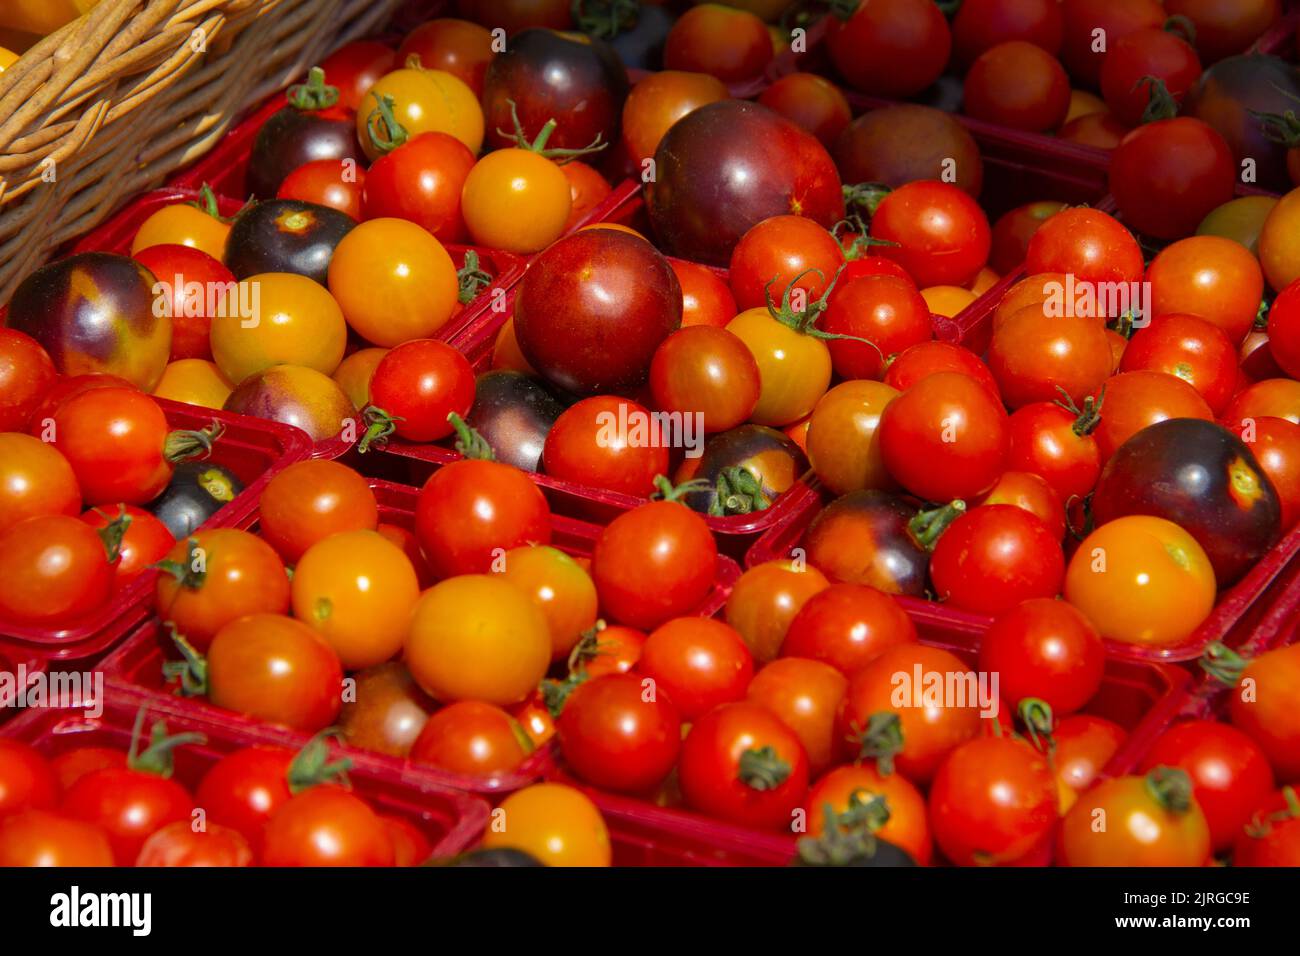 Pomodori ciliegini in vendita in un mercato all'aperto Foto Stock